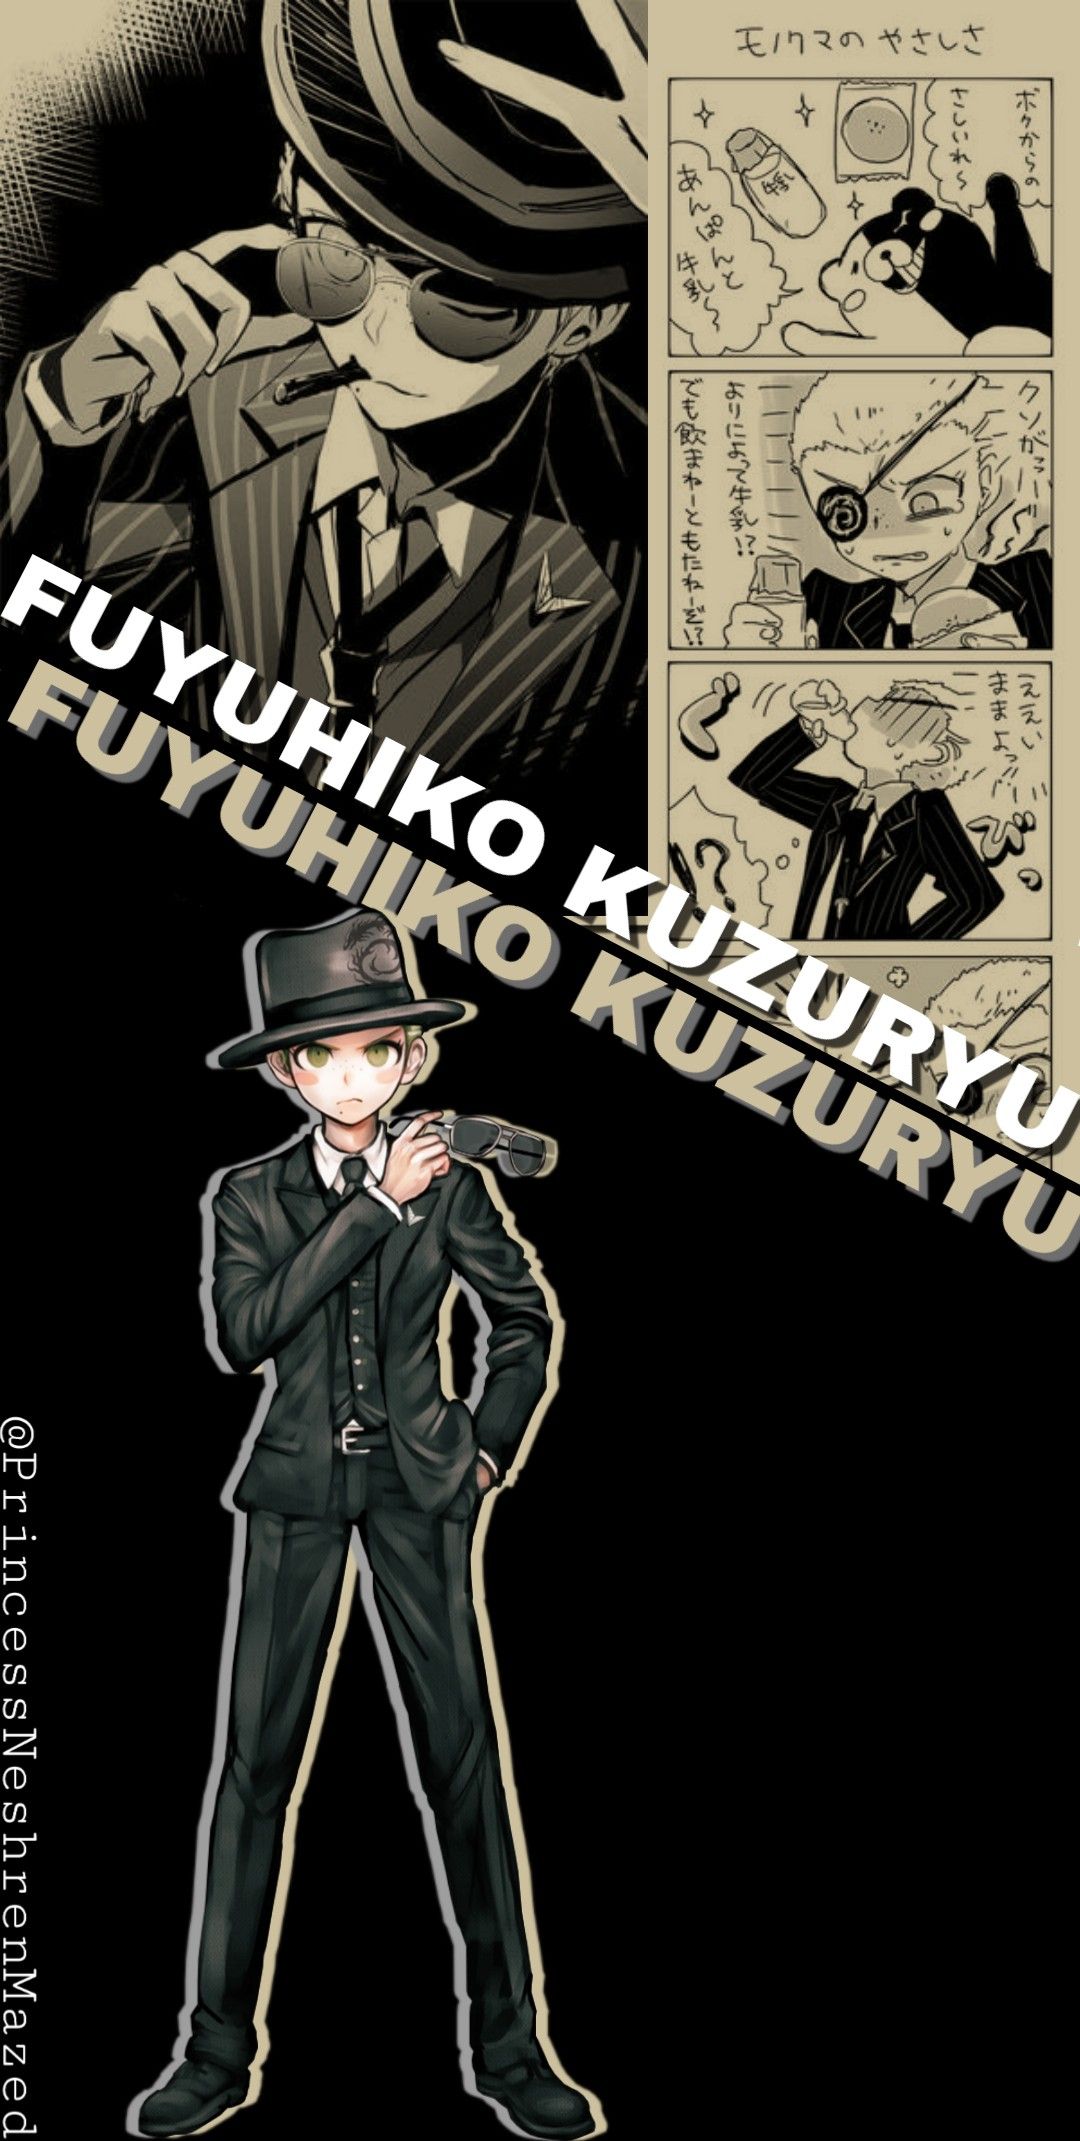 Fuyuhiko Kuzuryu wallpaper. Danganronpa characters, Danganronpa, Anime wallpaper